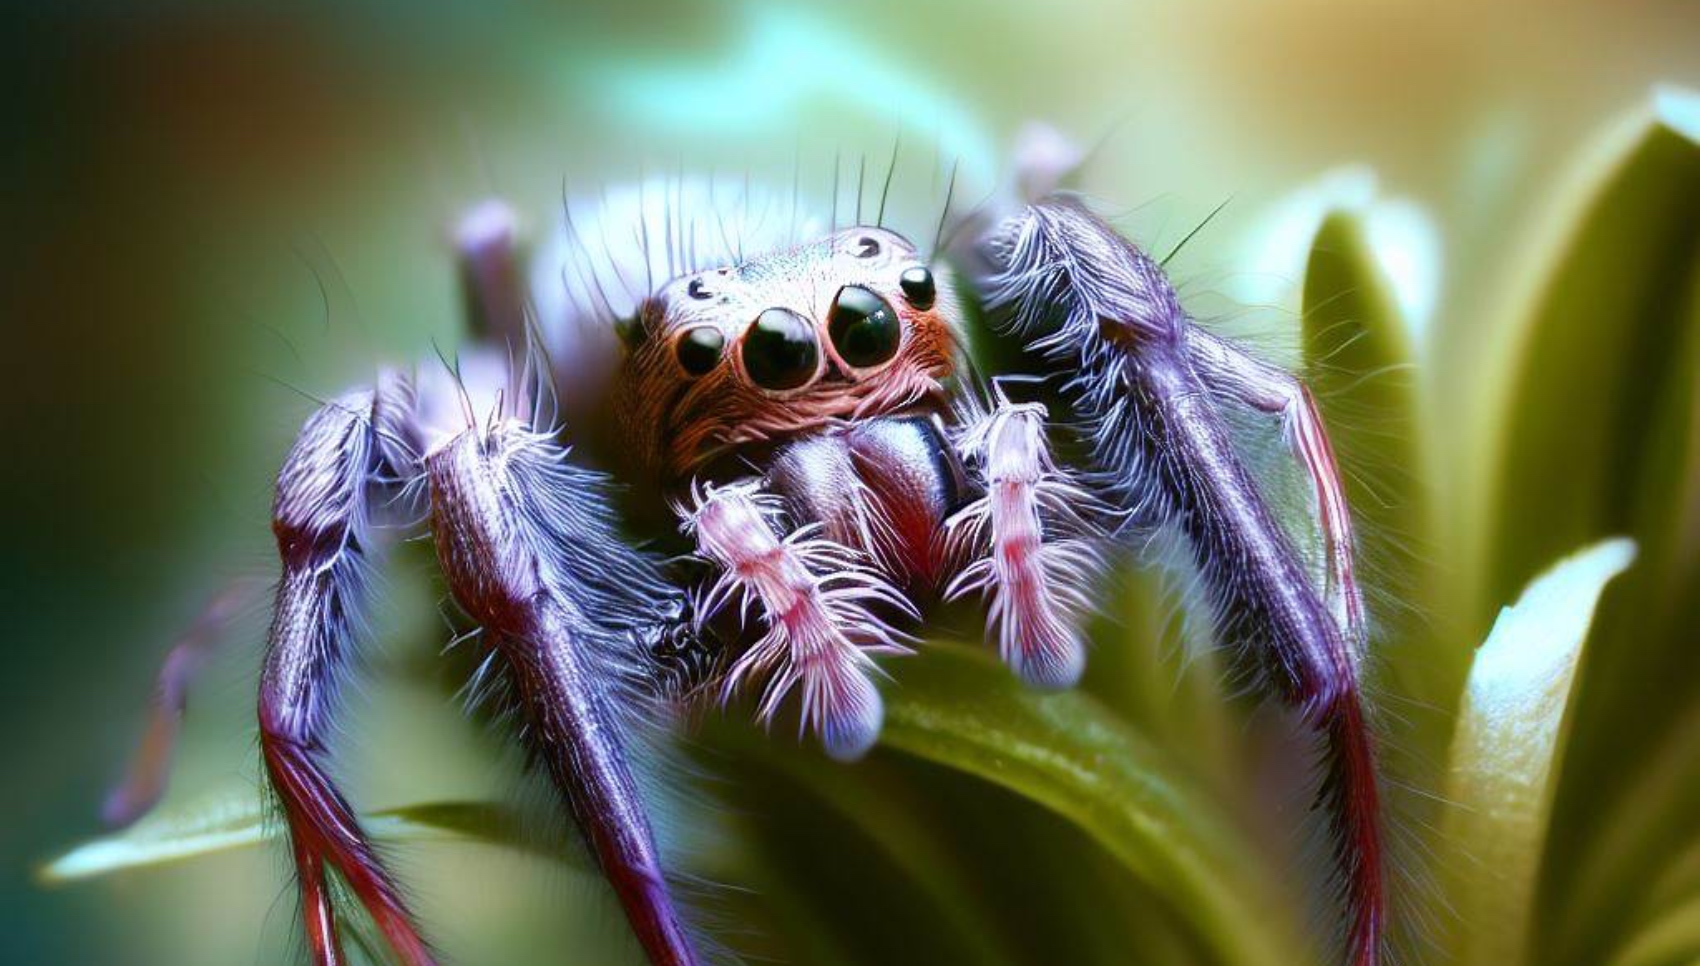 Des chercheurs de l’université de Pékin (Chine) expliquent comment Siler collingwoodi, une araignée sauteuse, a développé deux stratégies différenciées pour échapper à ses principaux prédateurs. Image générée par une IA. © X. Demeersman, Bing Image Creator